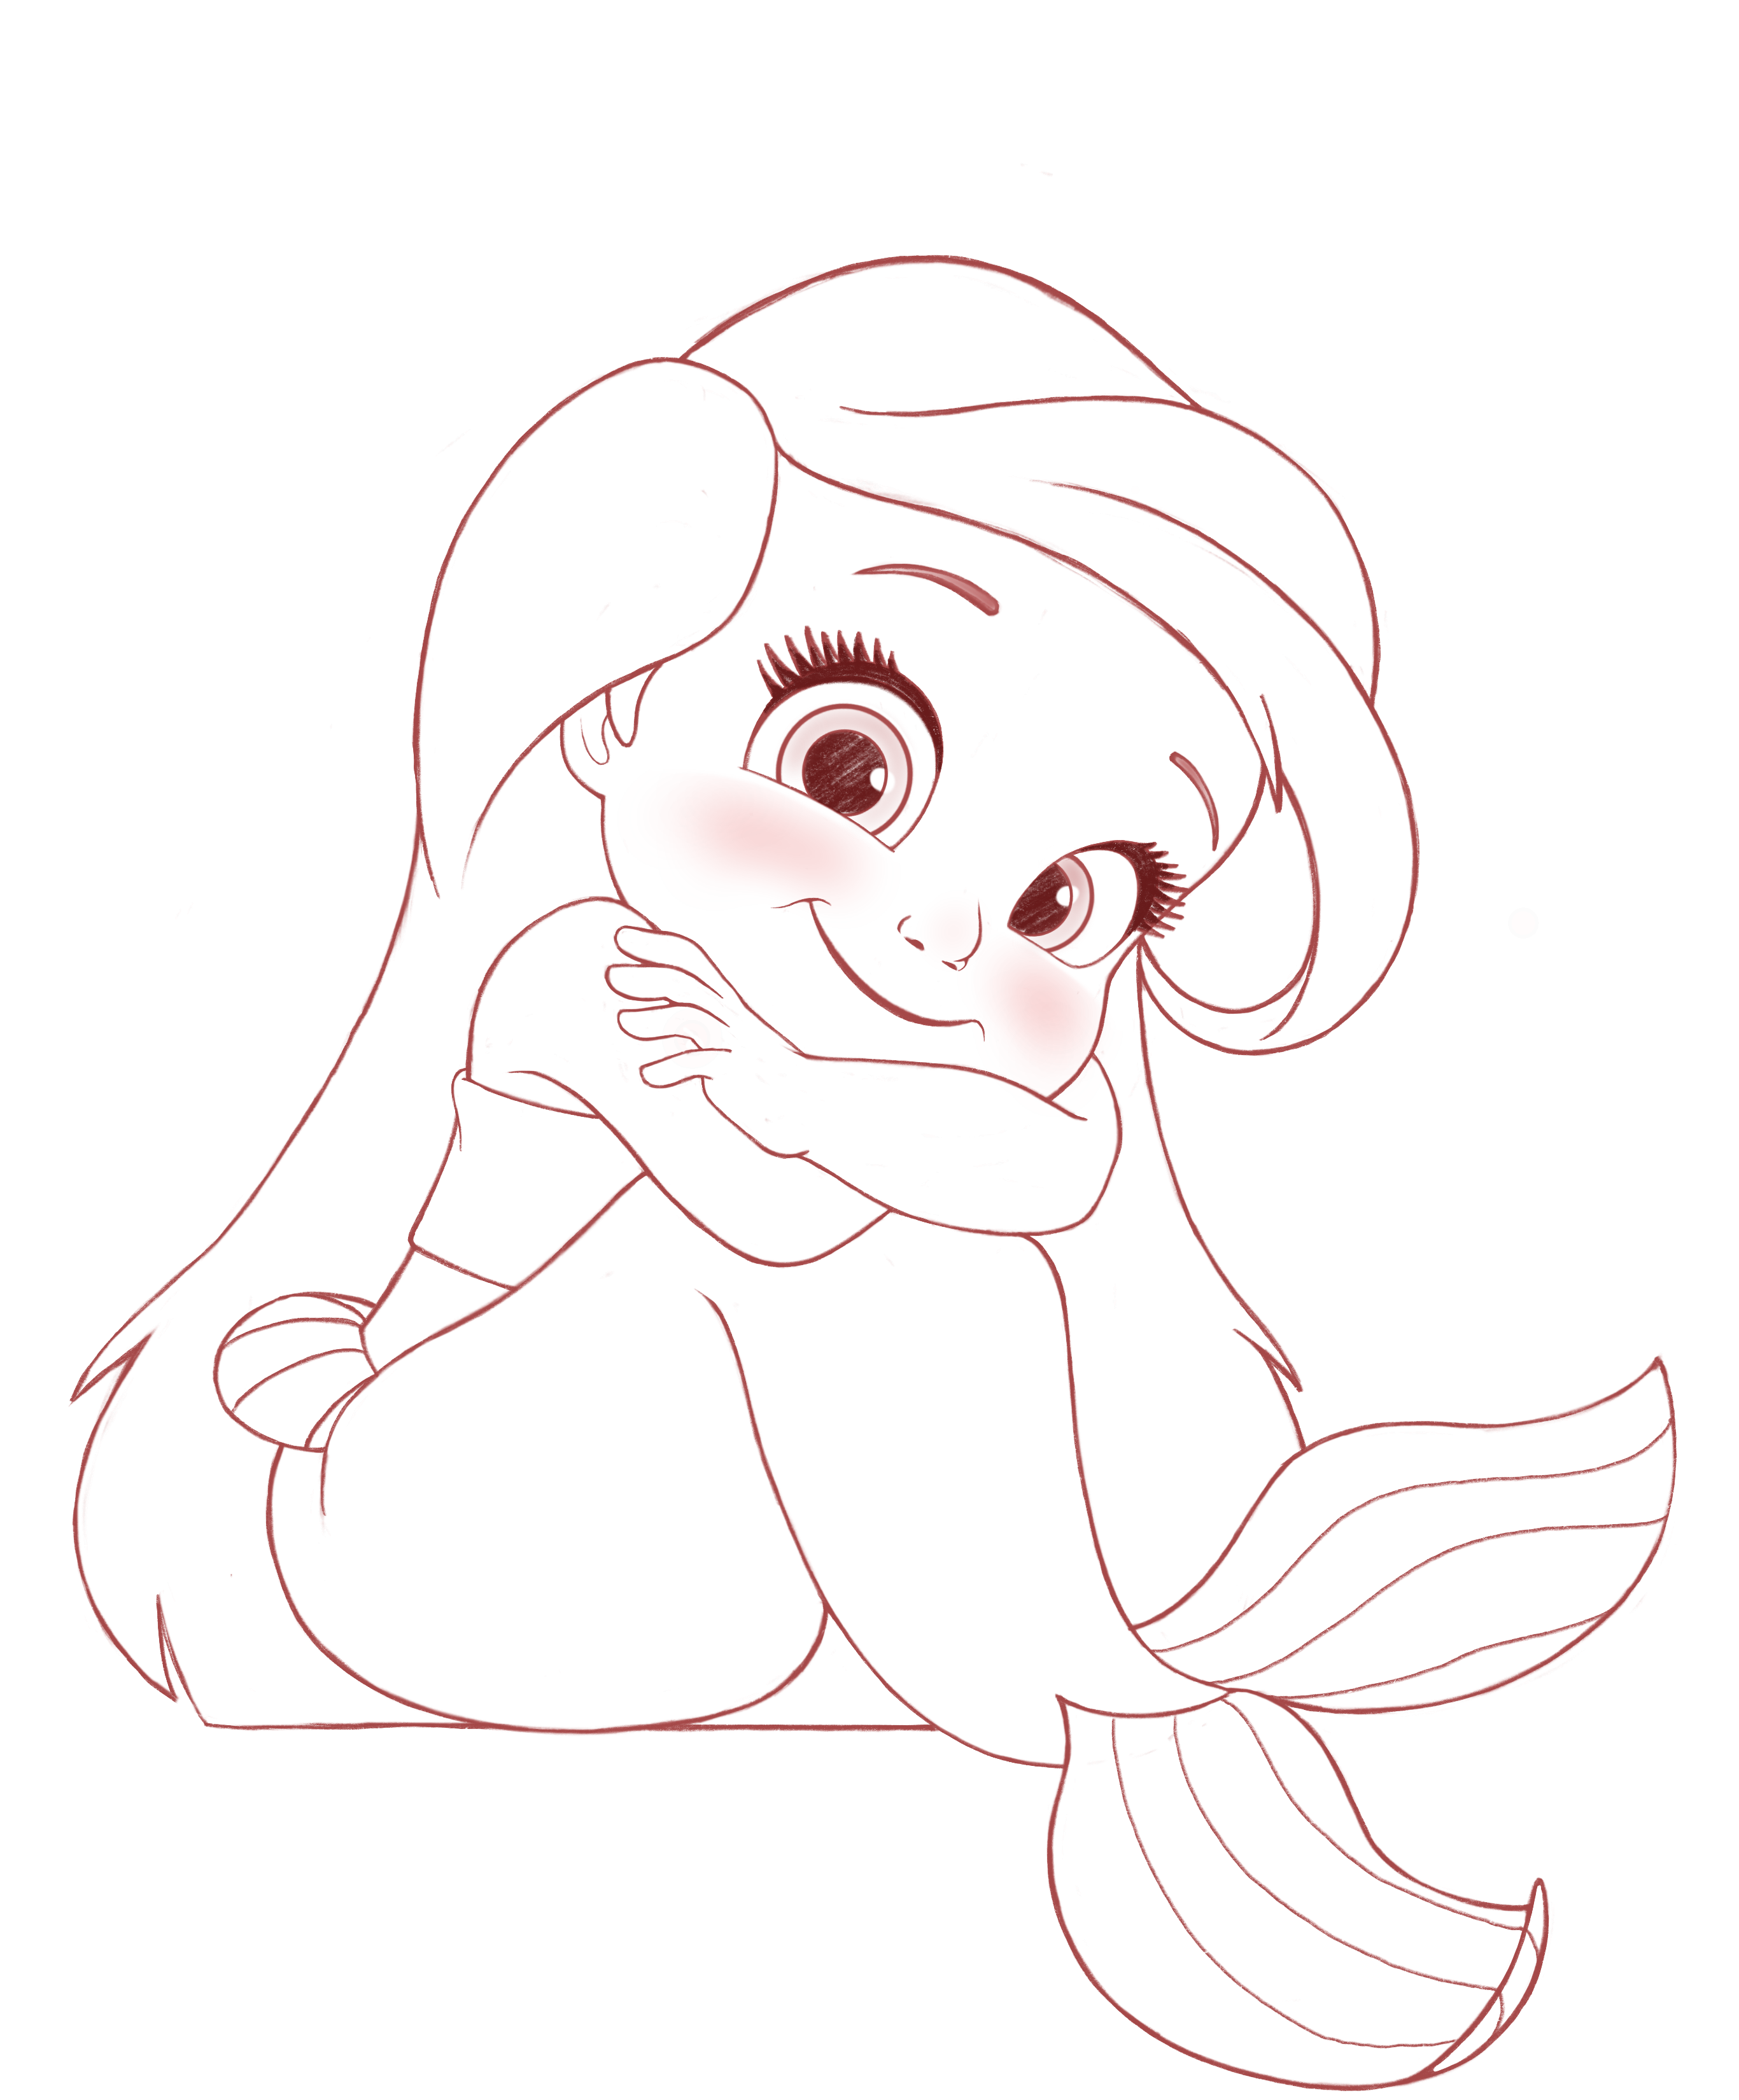 Ariel - The Littlest Mermaid (WIP)